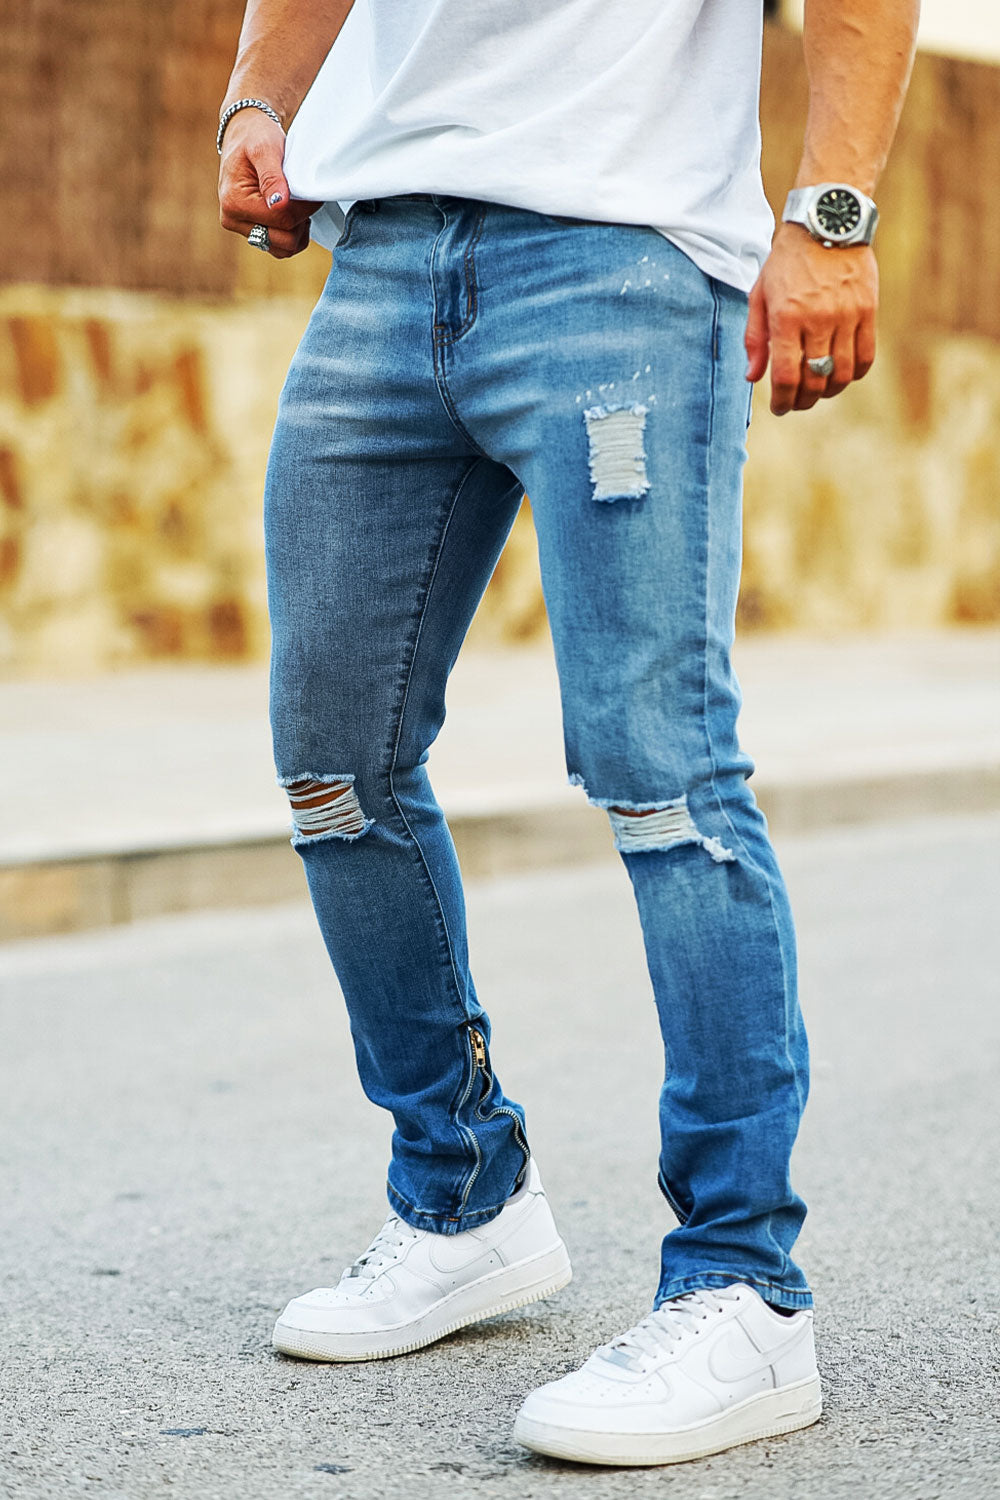 Men's Vintage Jeans With Zipper